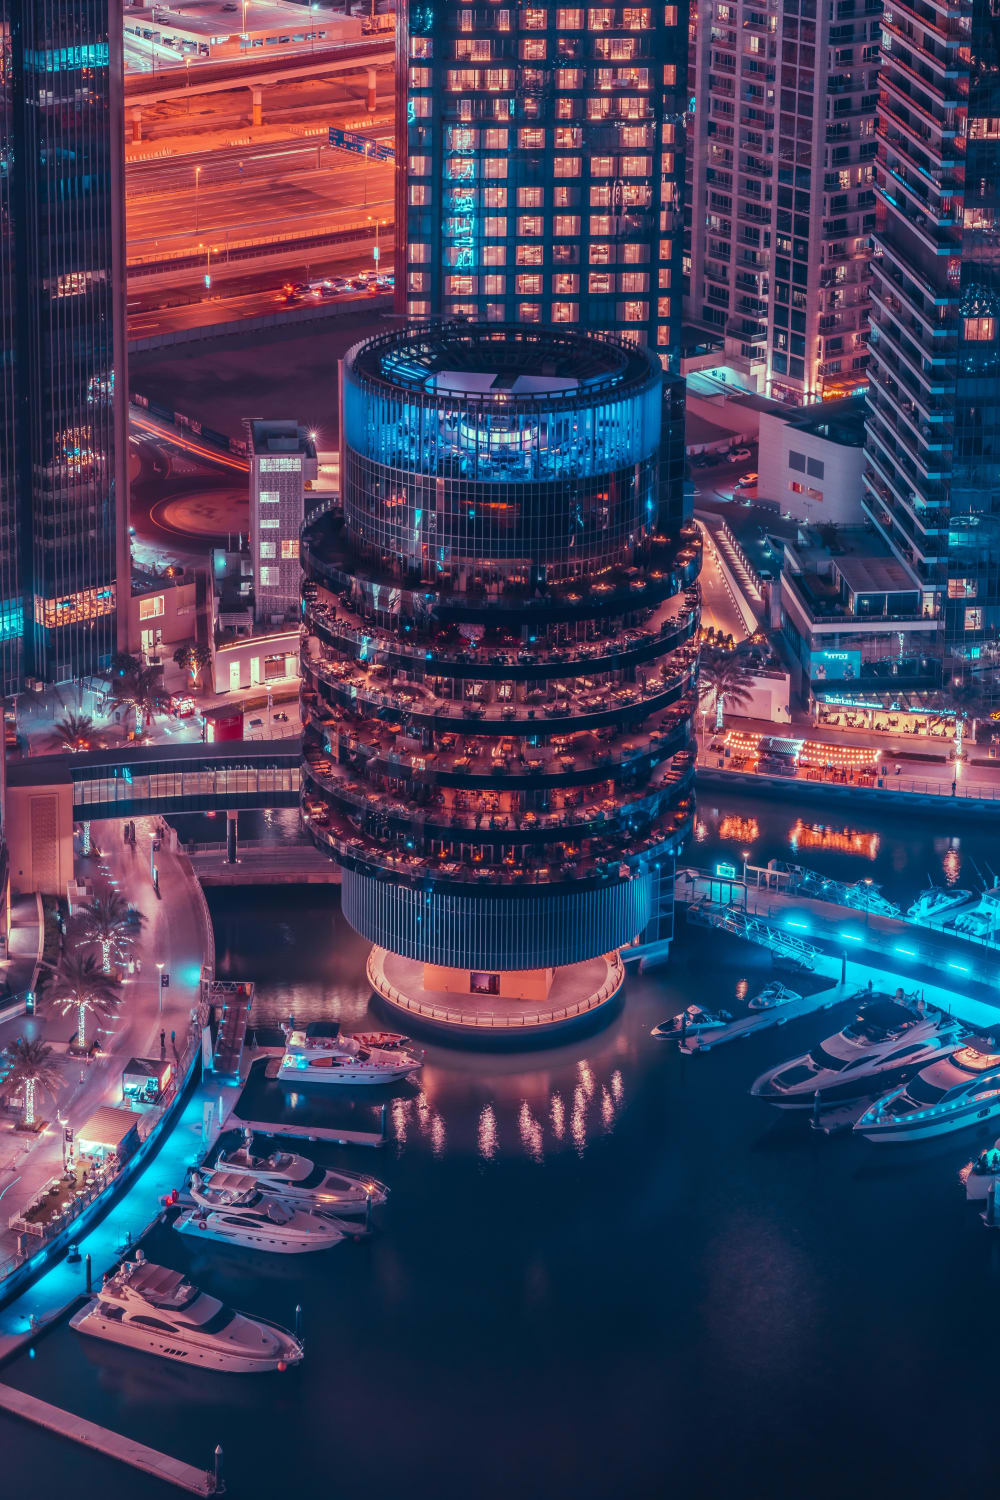 Seven floors of restaurants in Dubai, UAE